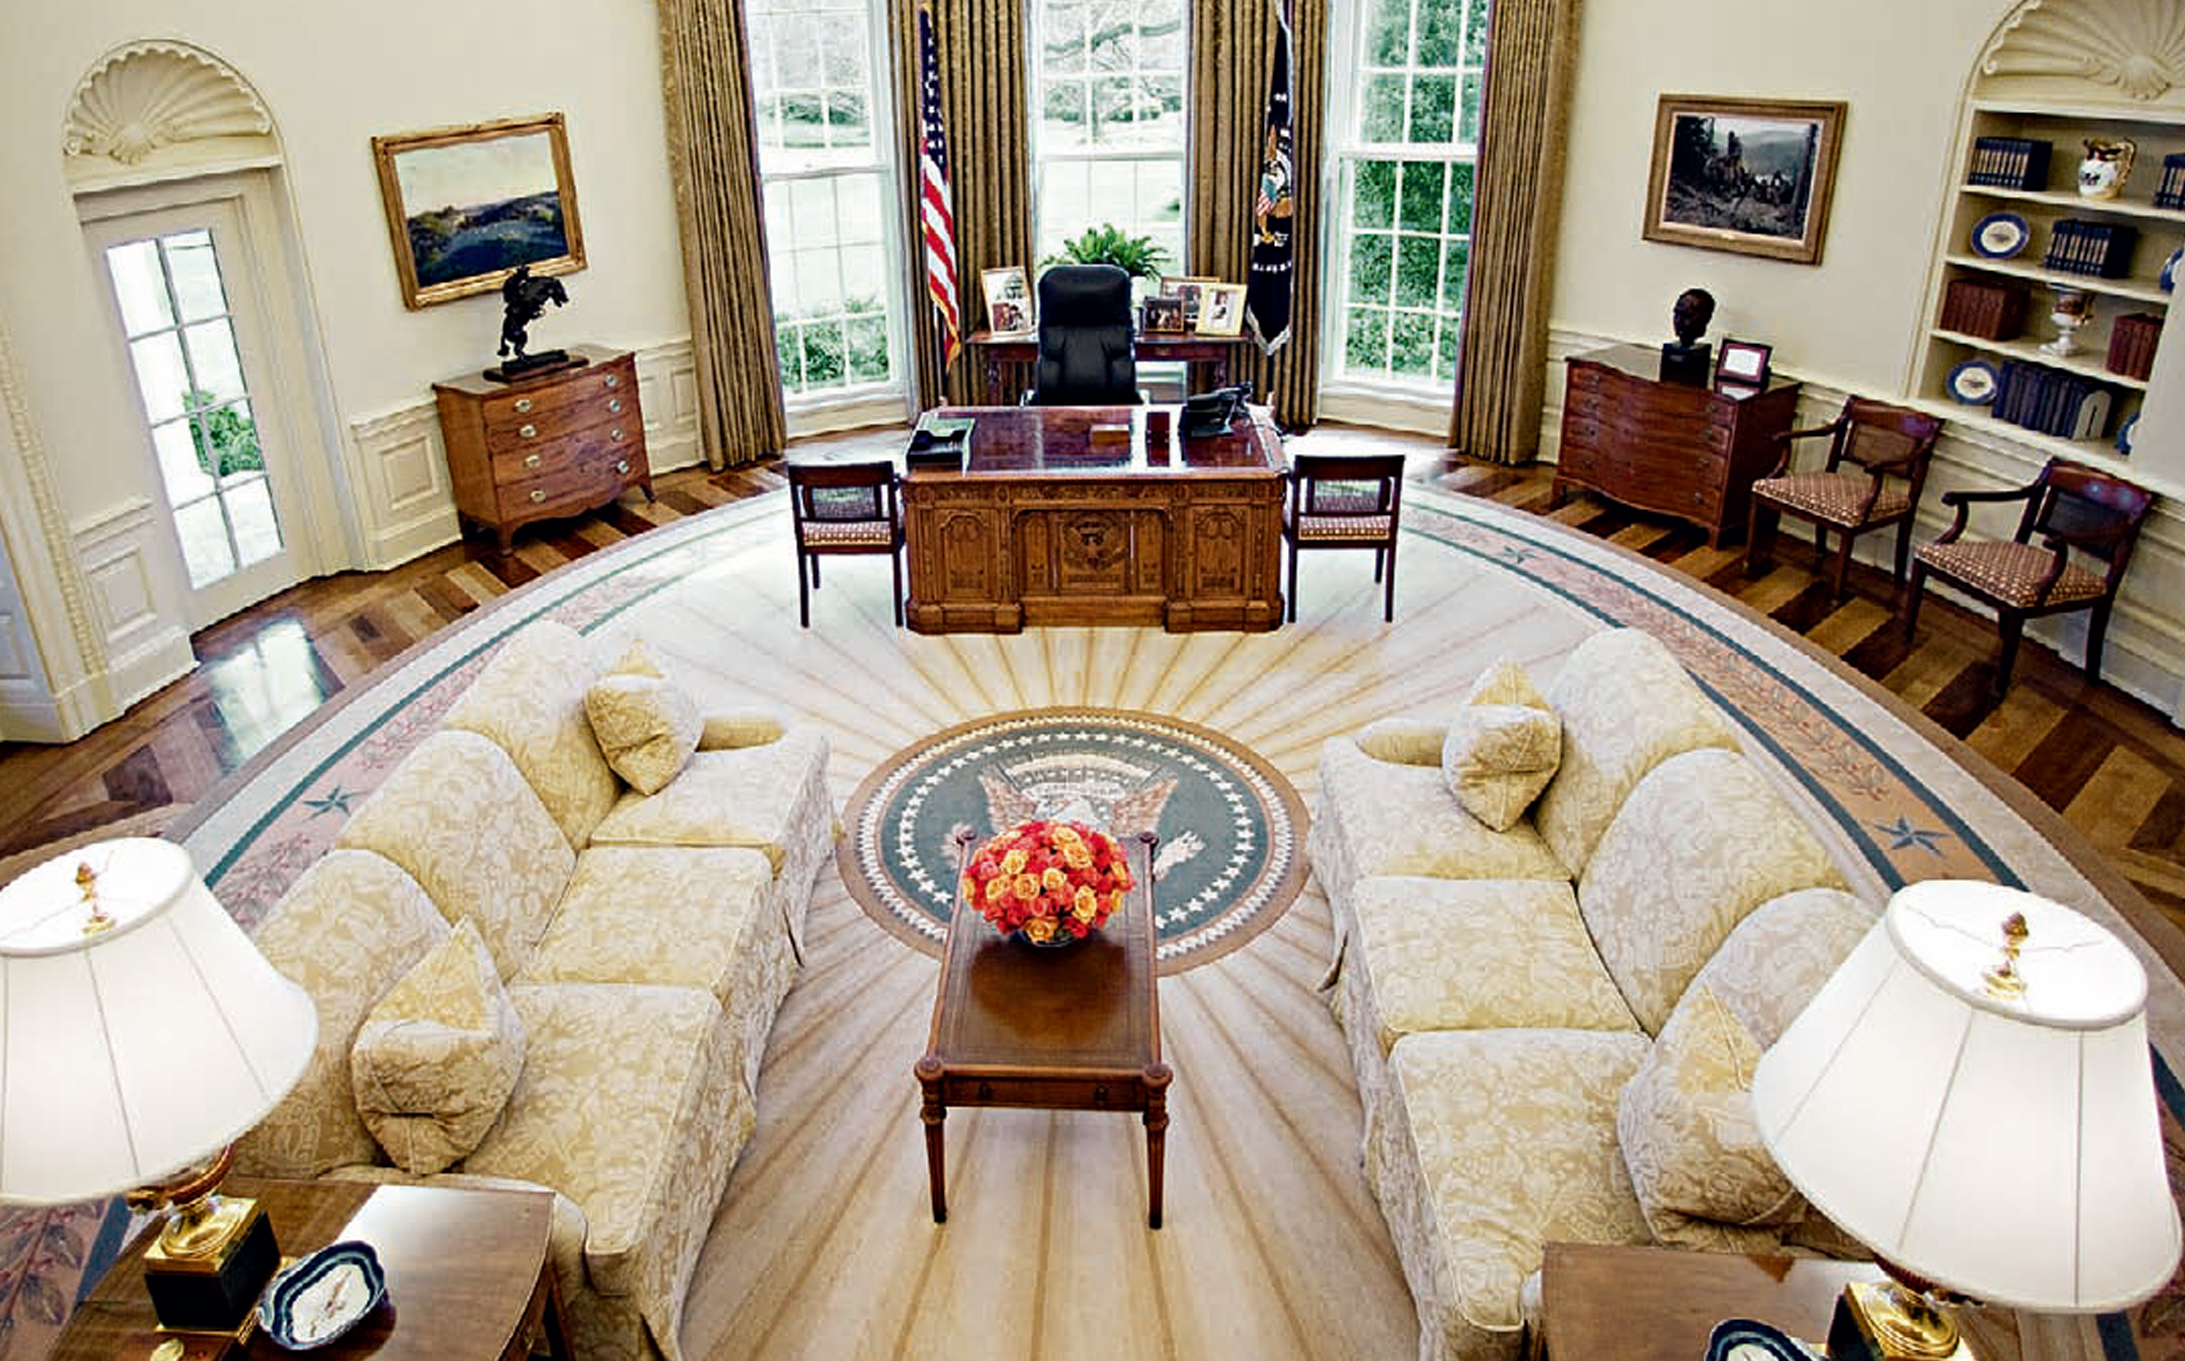 白宫内部背景高清图片